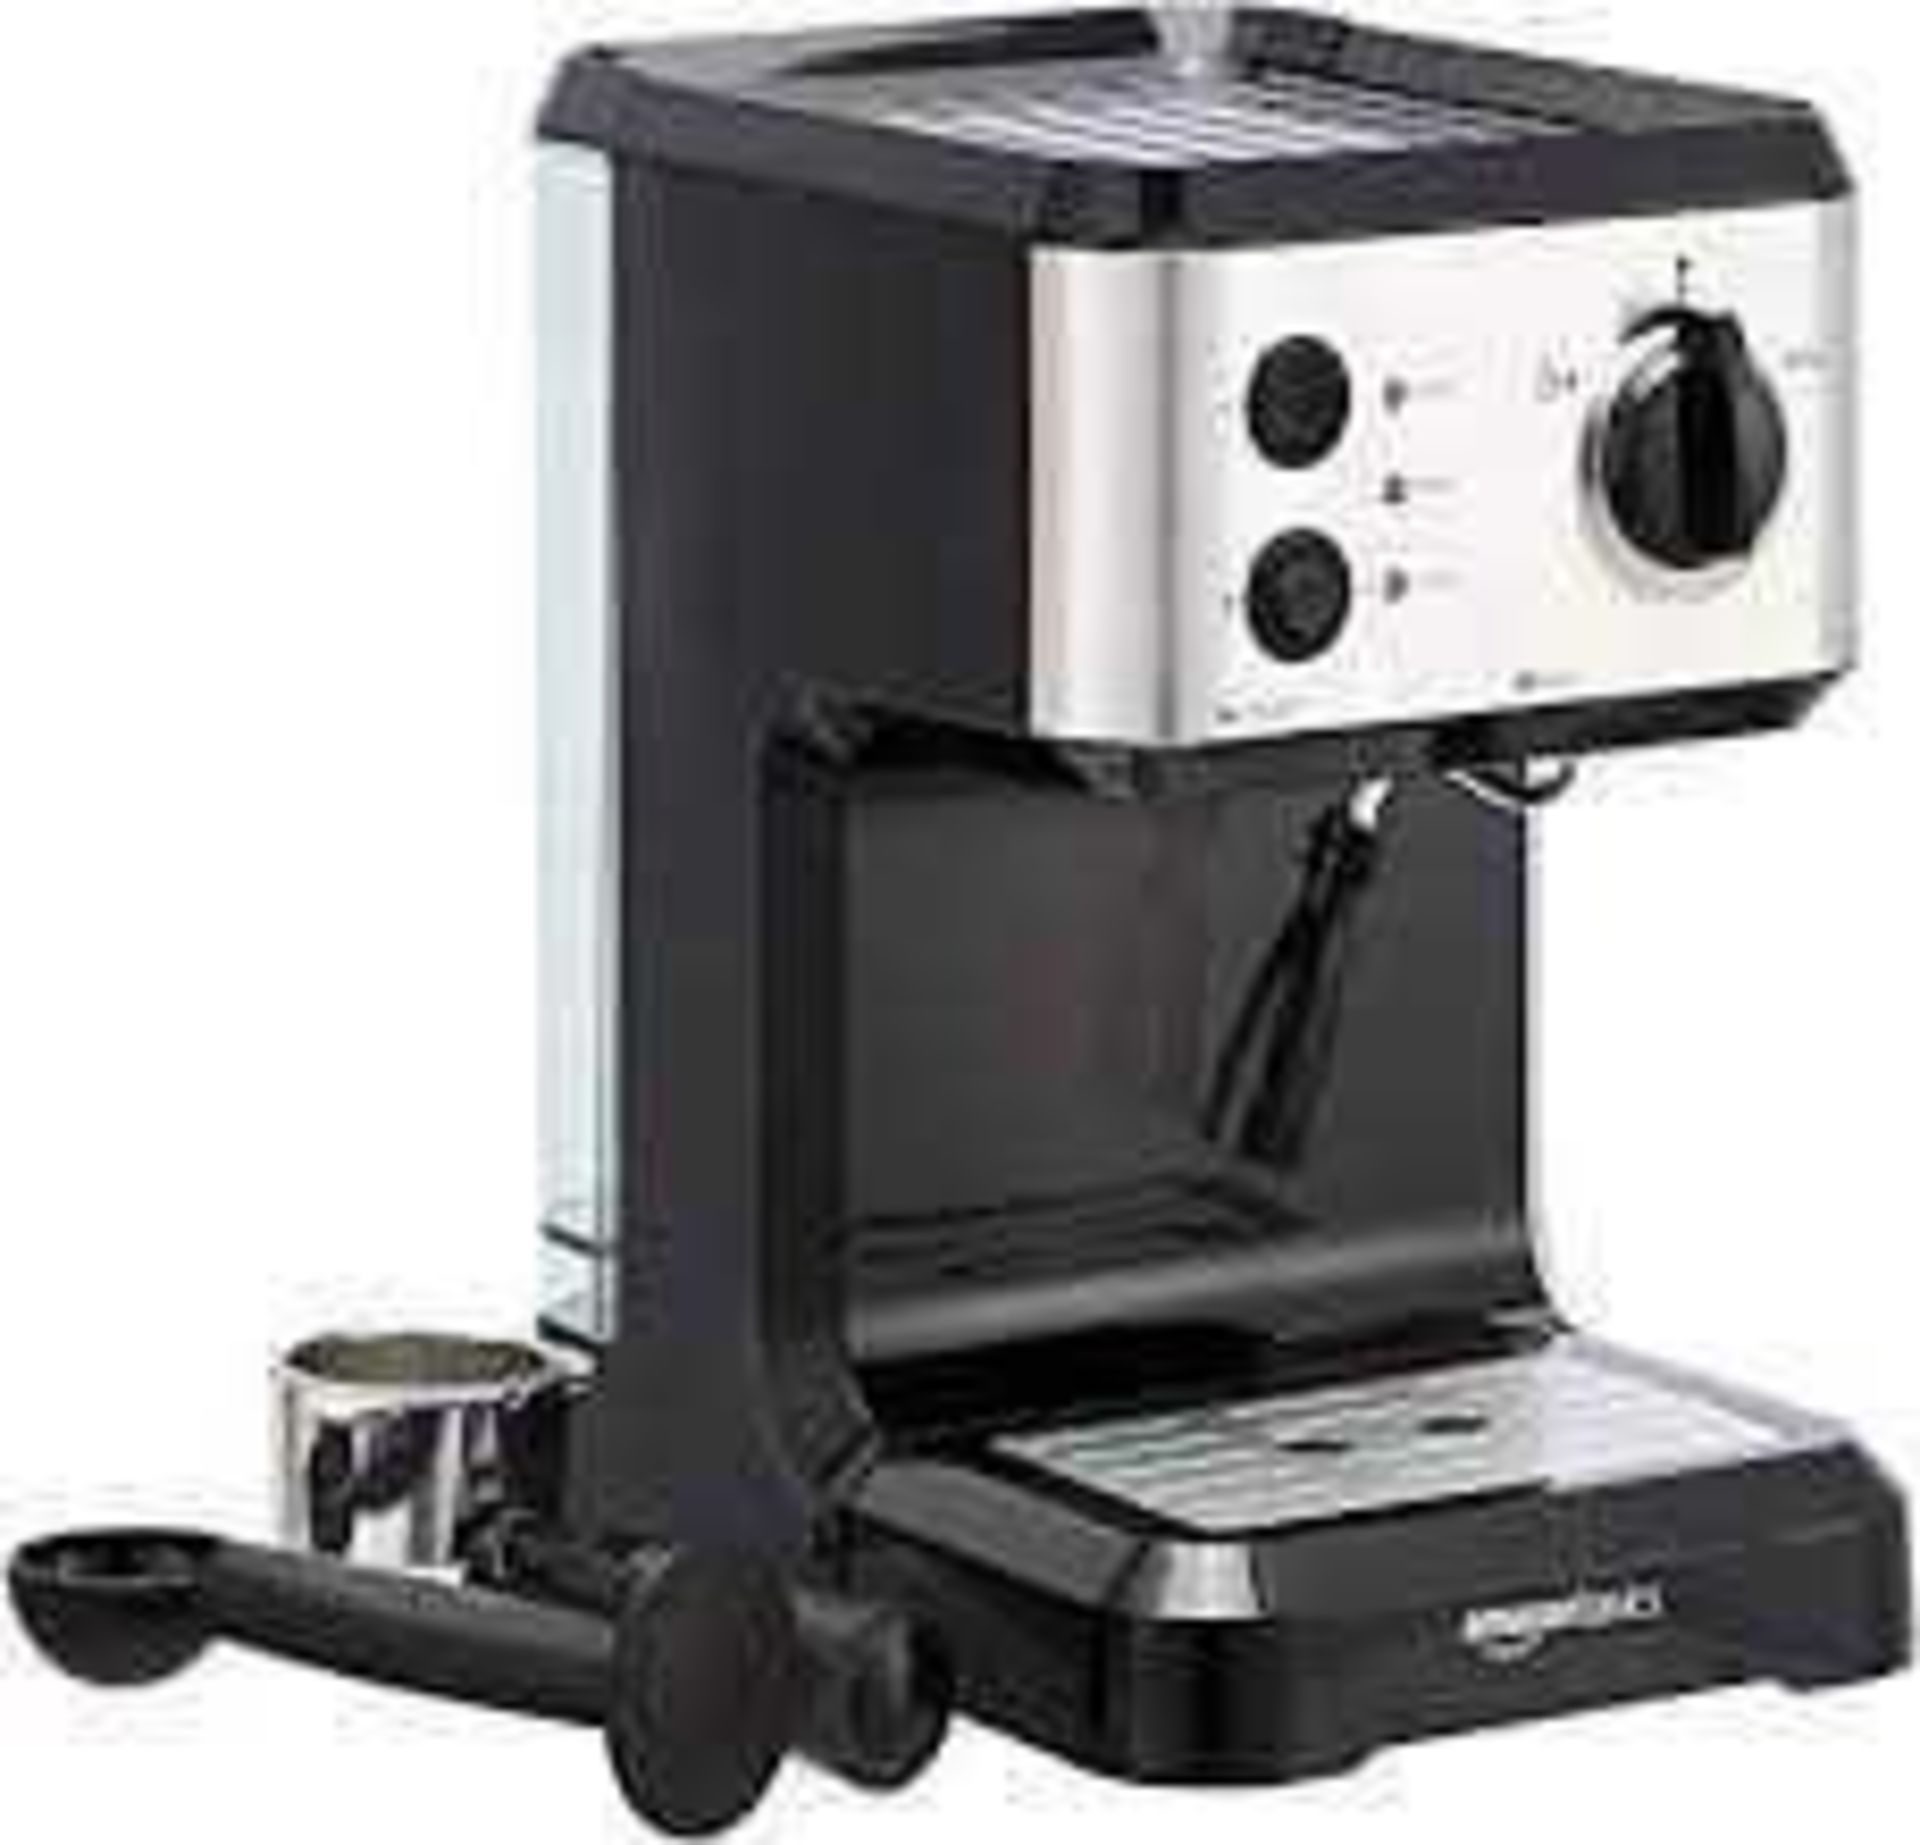 RRP £70 Lot Includes Boxed Amazon Basics Espresso Coffee Machine(New